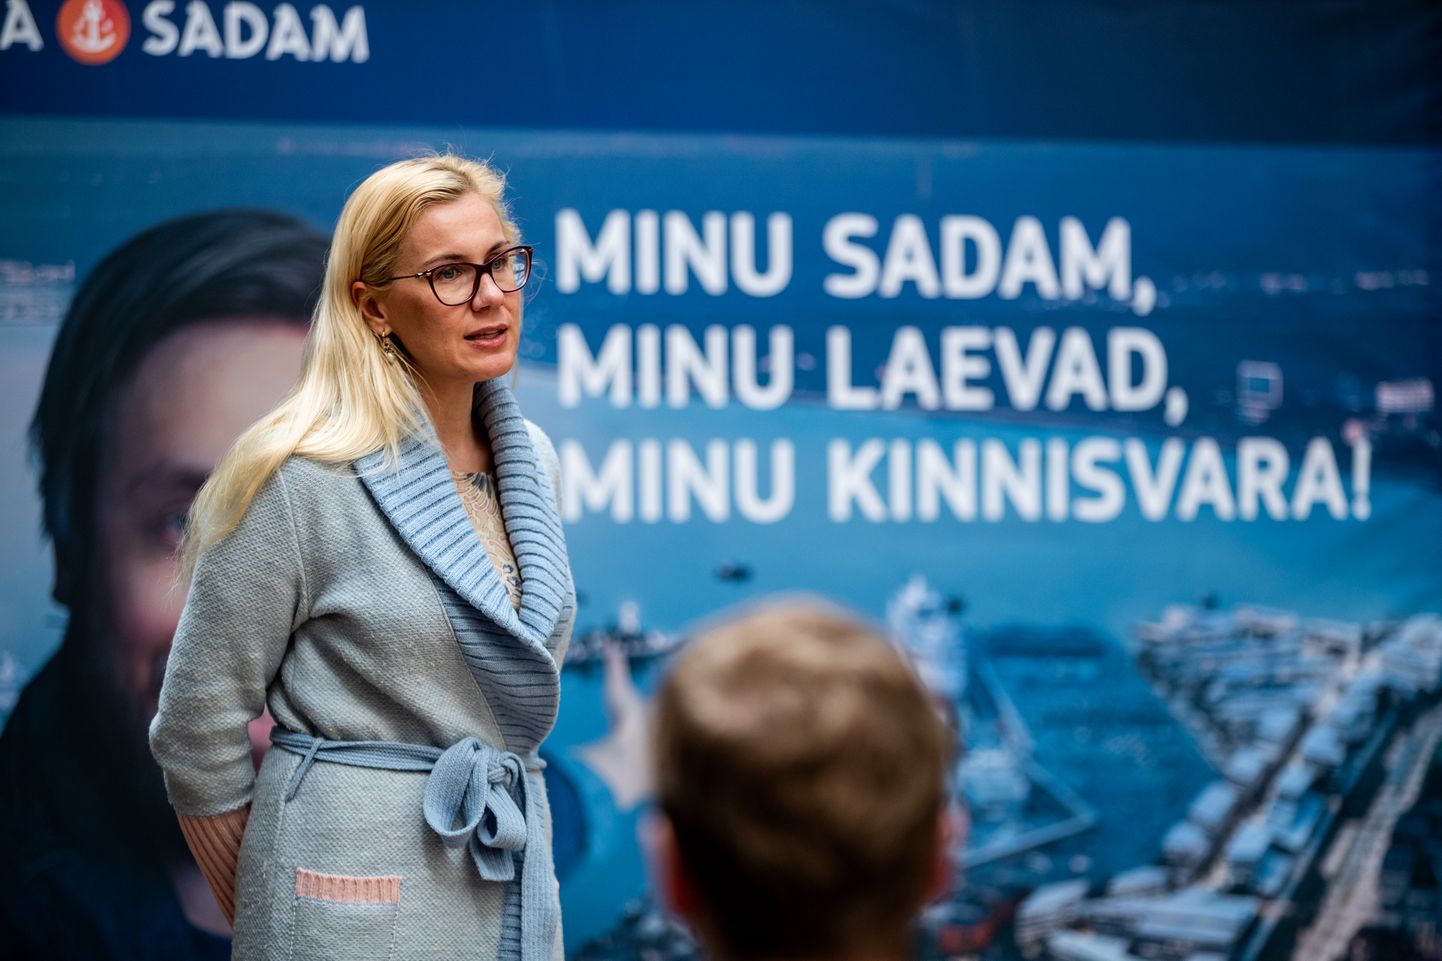 Tallinna sadam börsile mineku plaan sai konkreetsemaks 8. mail toimunud pressikonverentsil, kus astus muuhulgas üles ka majandus- ja kommunikatsiooniminister Kadri Simson.